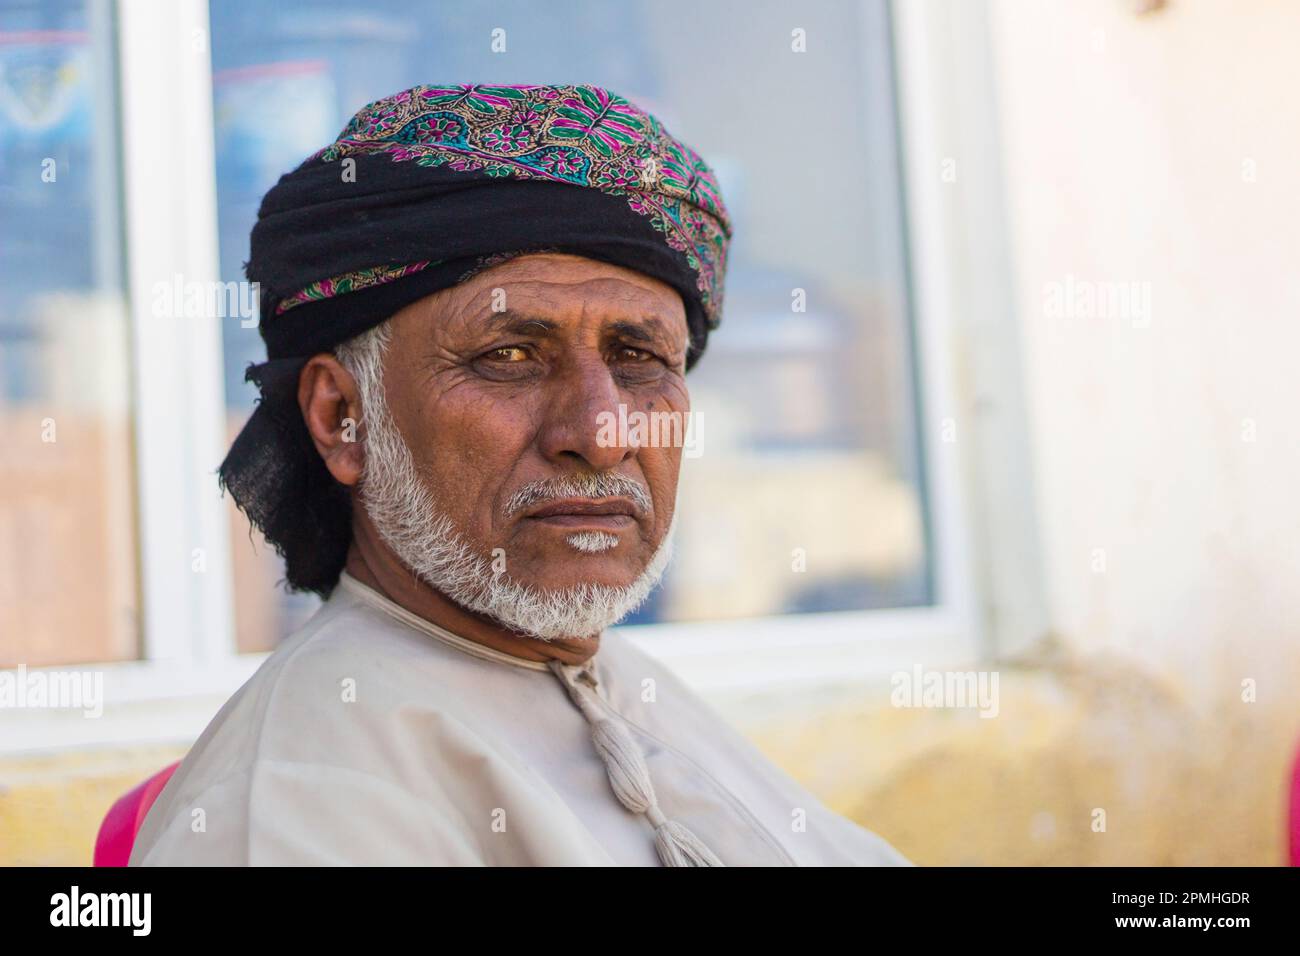 Porträt eines omanischen Mannes mit Kopfbedeckungen, die in die Kamera schauen, Hasik, Dhofar Governorate, Oman, Naher Osten Stockfoto